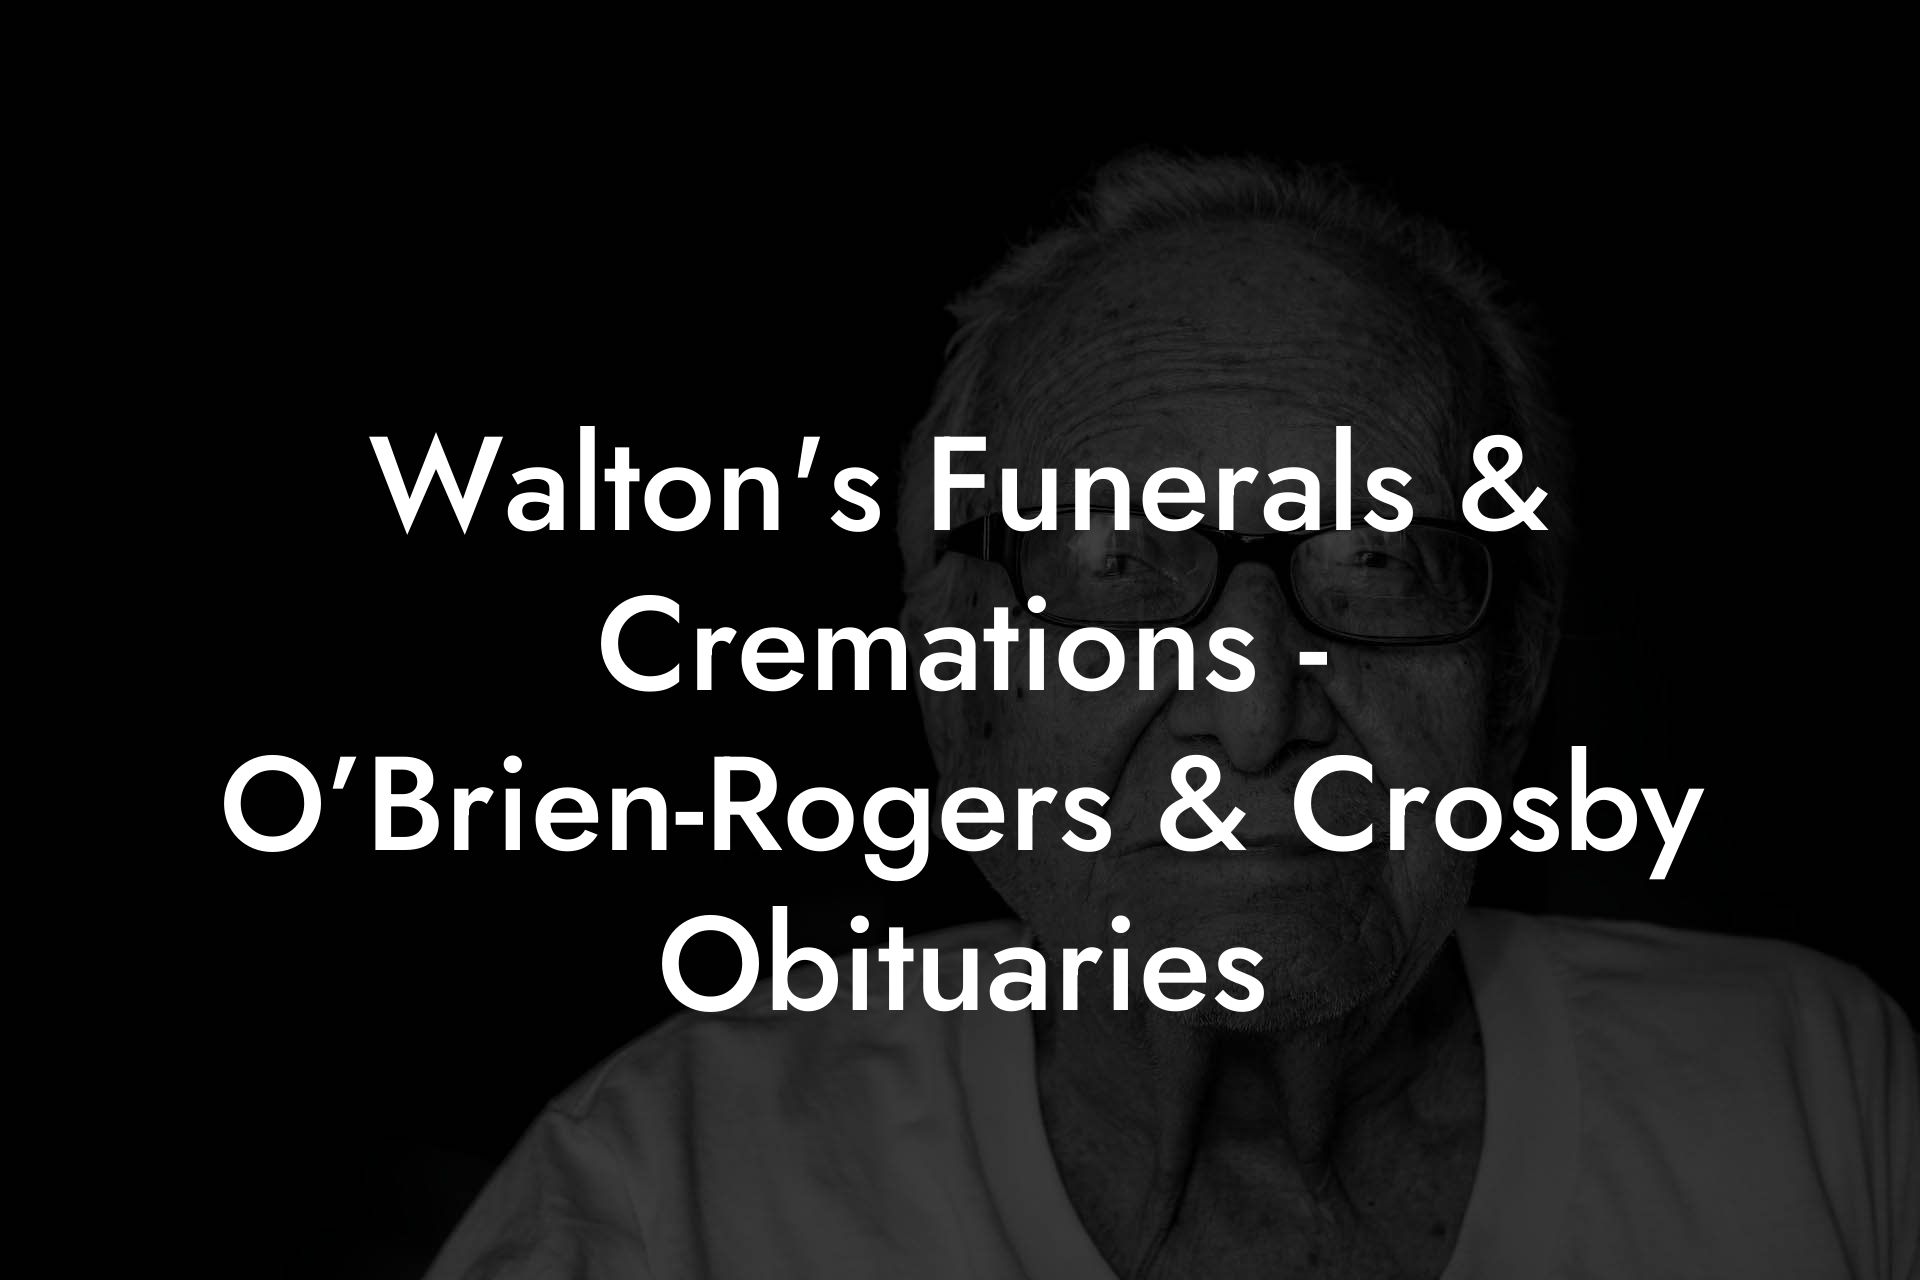 Walton's Funerals & Cremations - O’Brien-Rogers & Crosby Obituaries